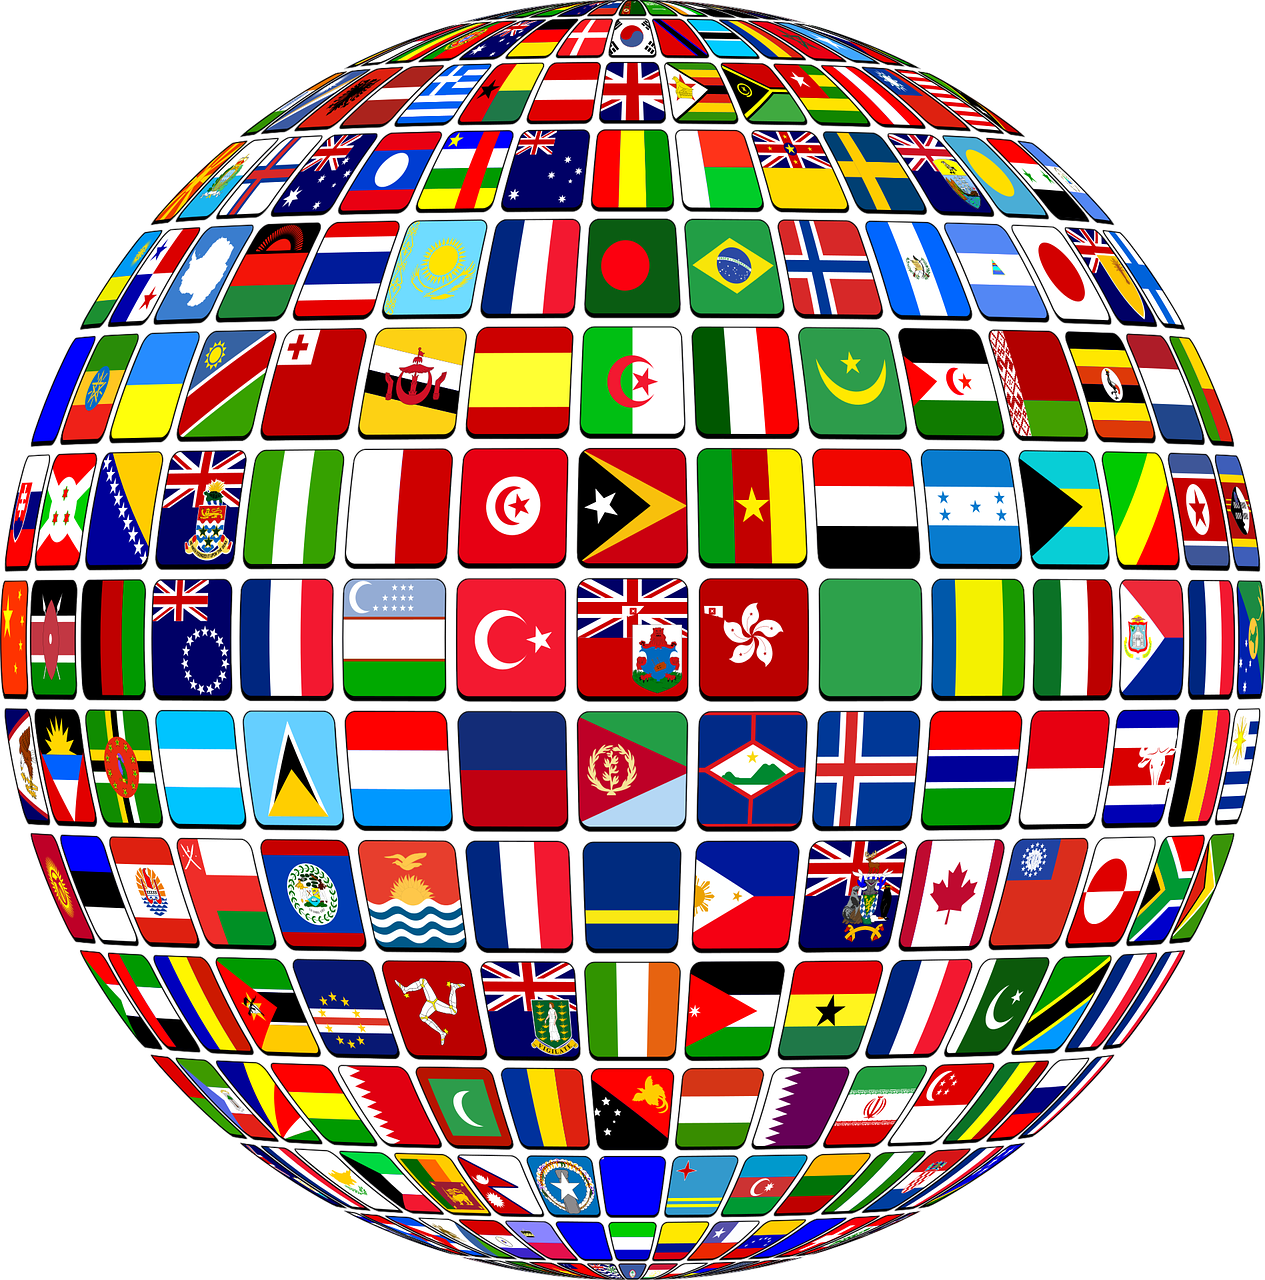 Tarptautinis, Pasaulis, Vėliavos, Šalyse, Tautos, Valstijos, Politika, Politinis, Geografija, Sienos